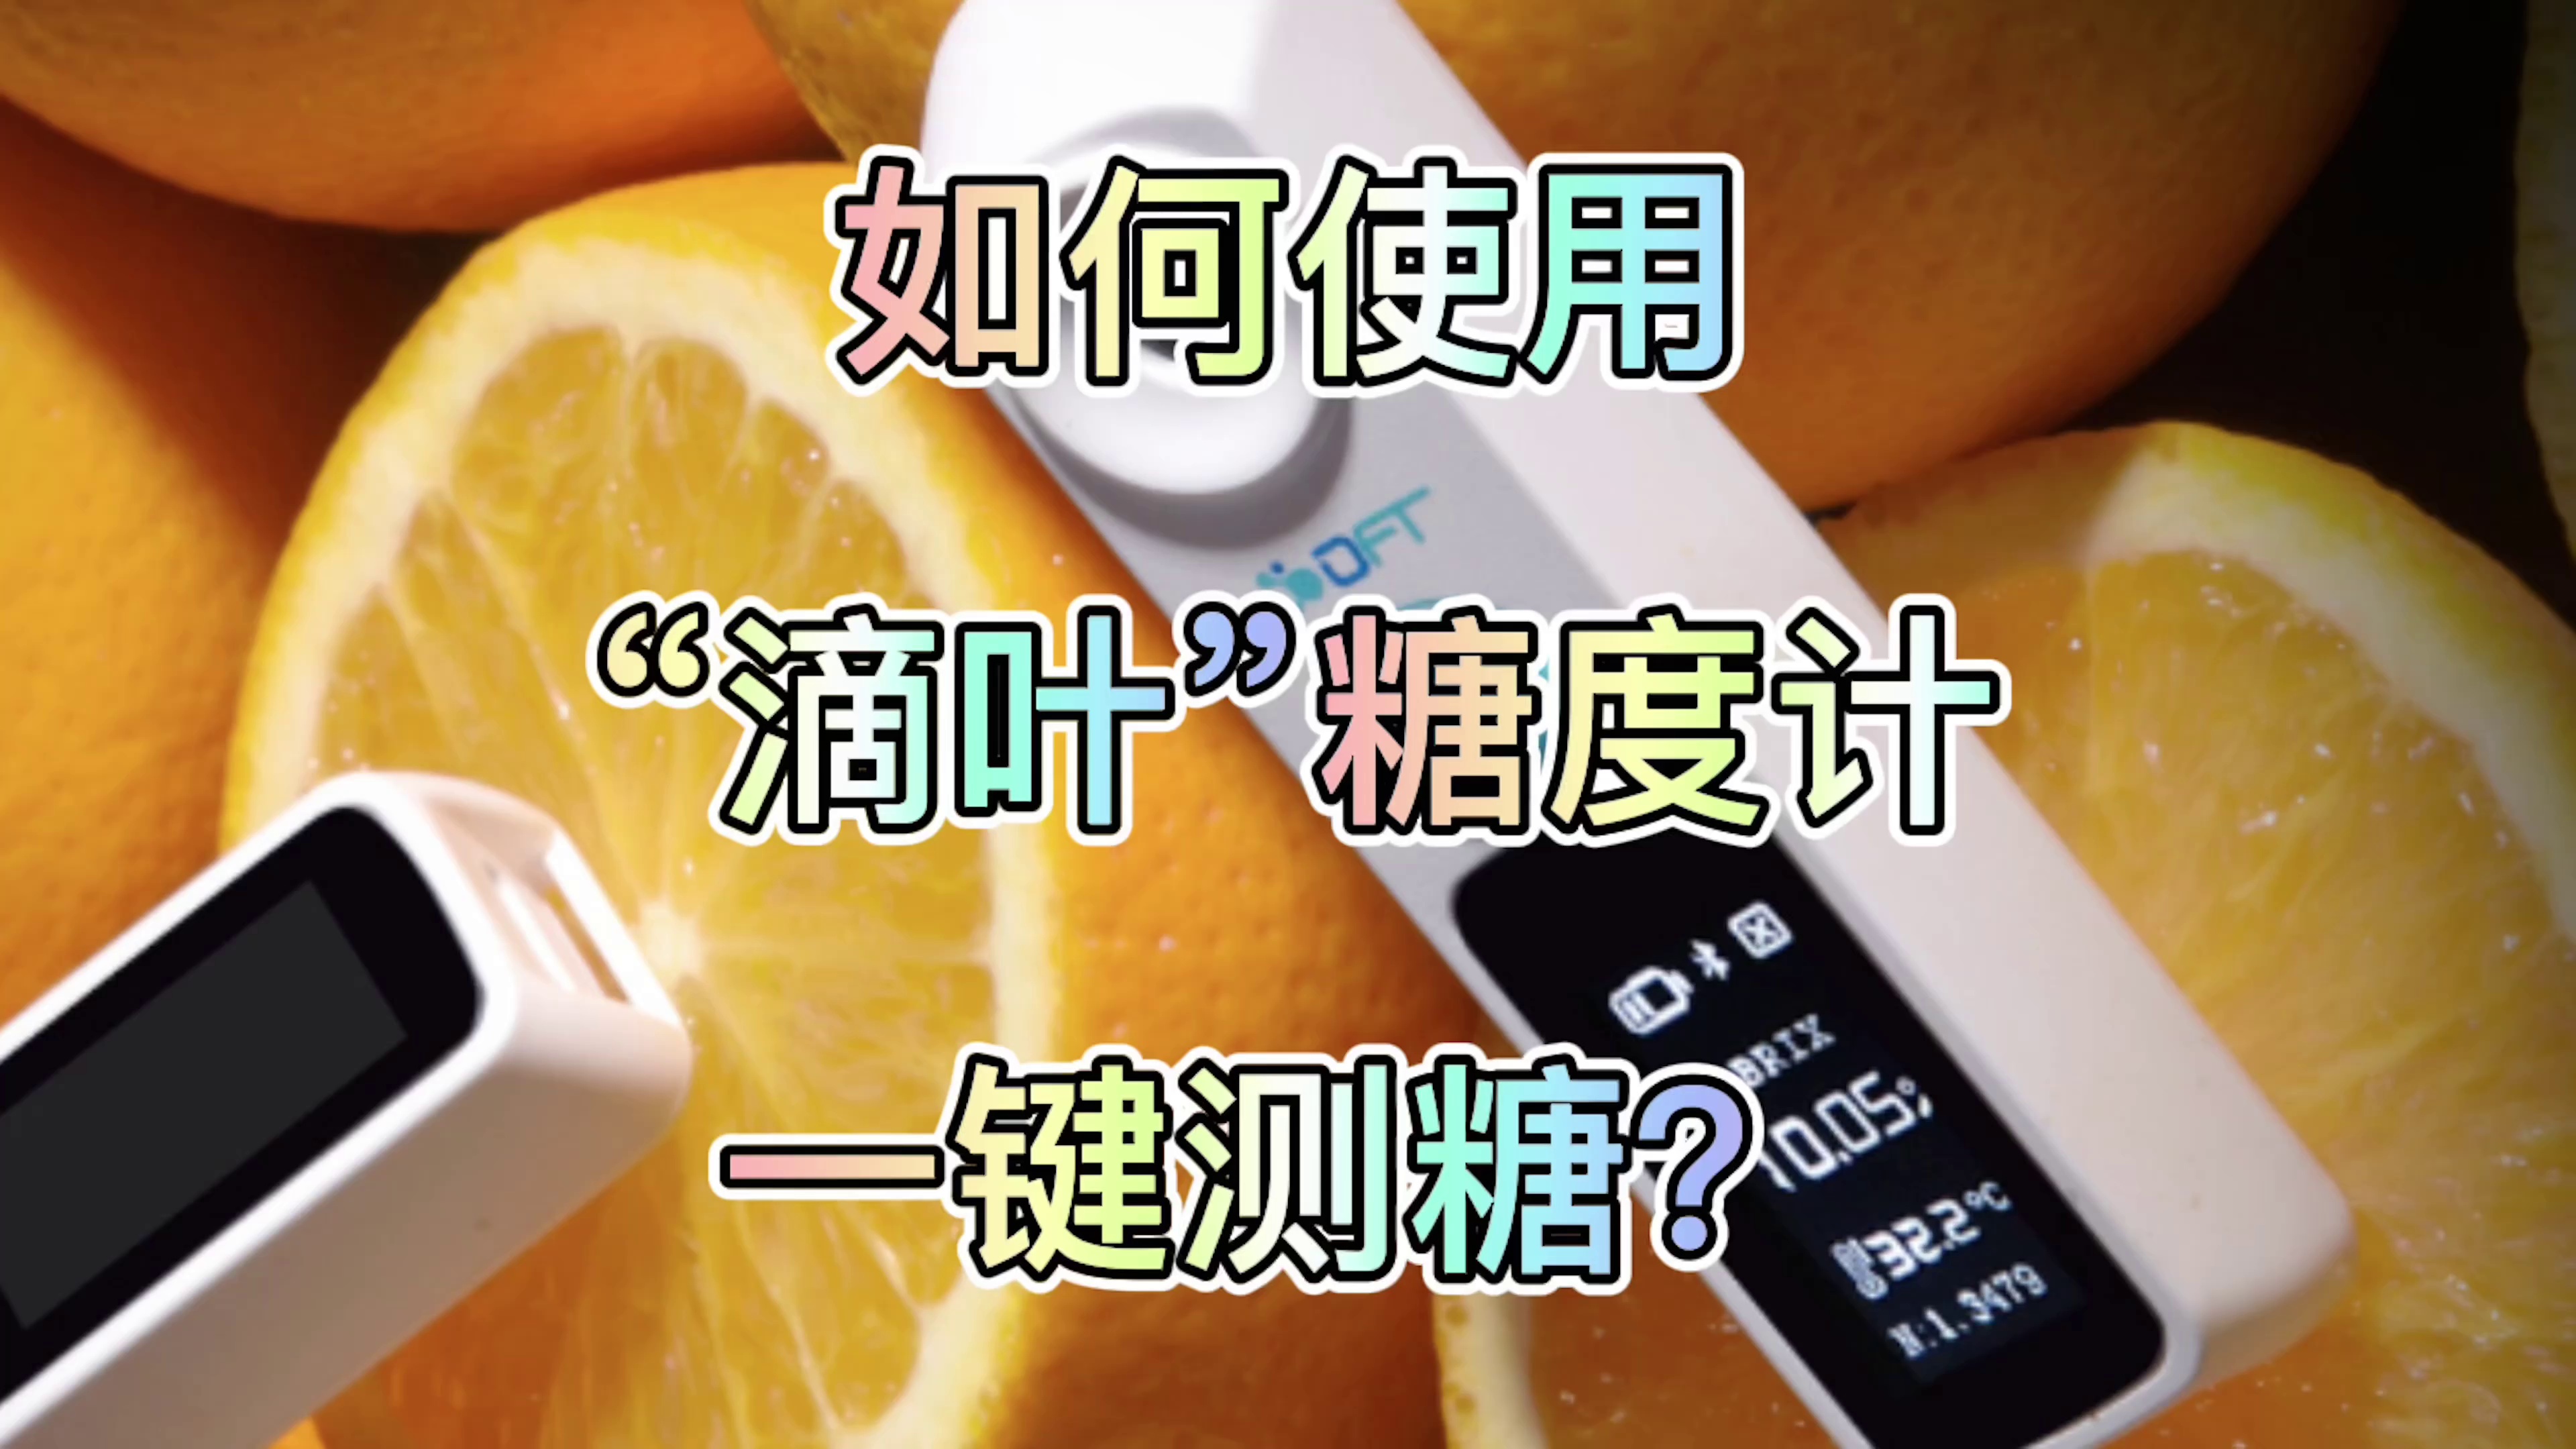 설탕 측정기 고정밀 과일 디지털 디스플레이 농도 특수 배꼽 오렌지 감귤류 단맛 시험기